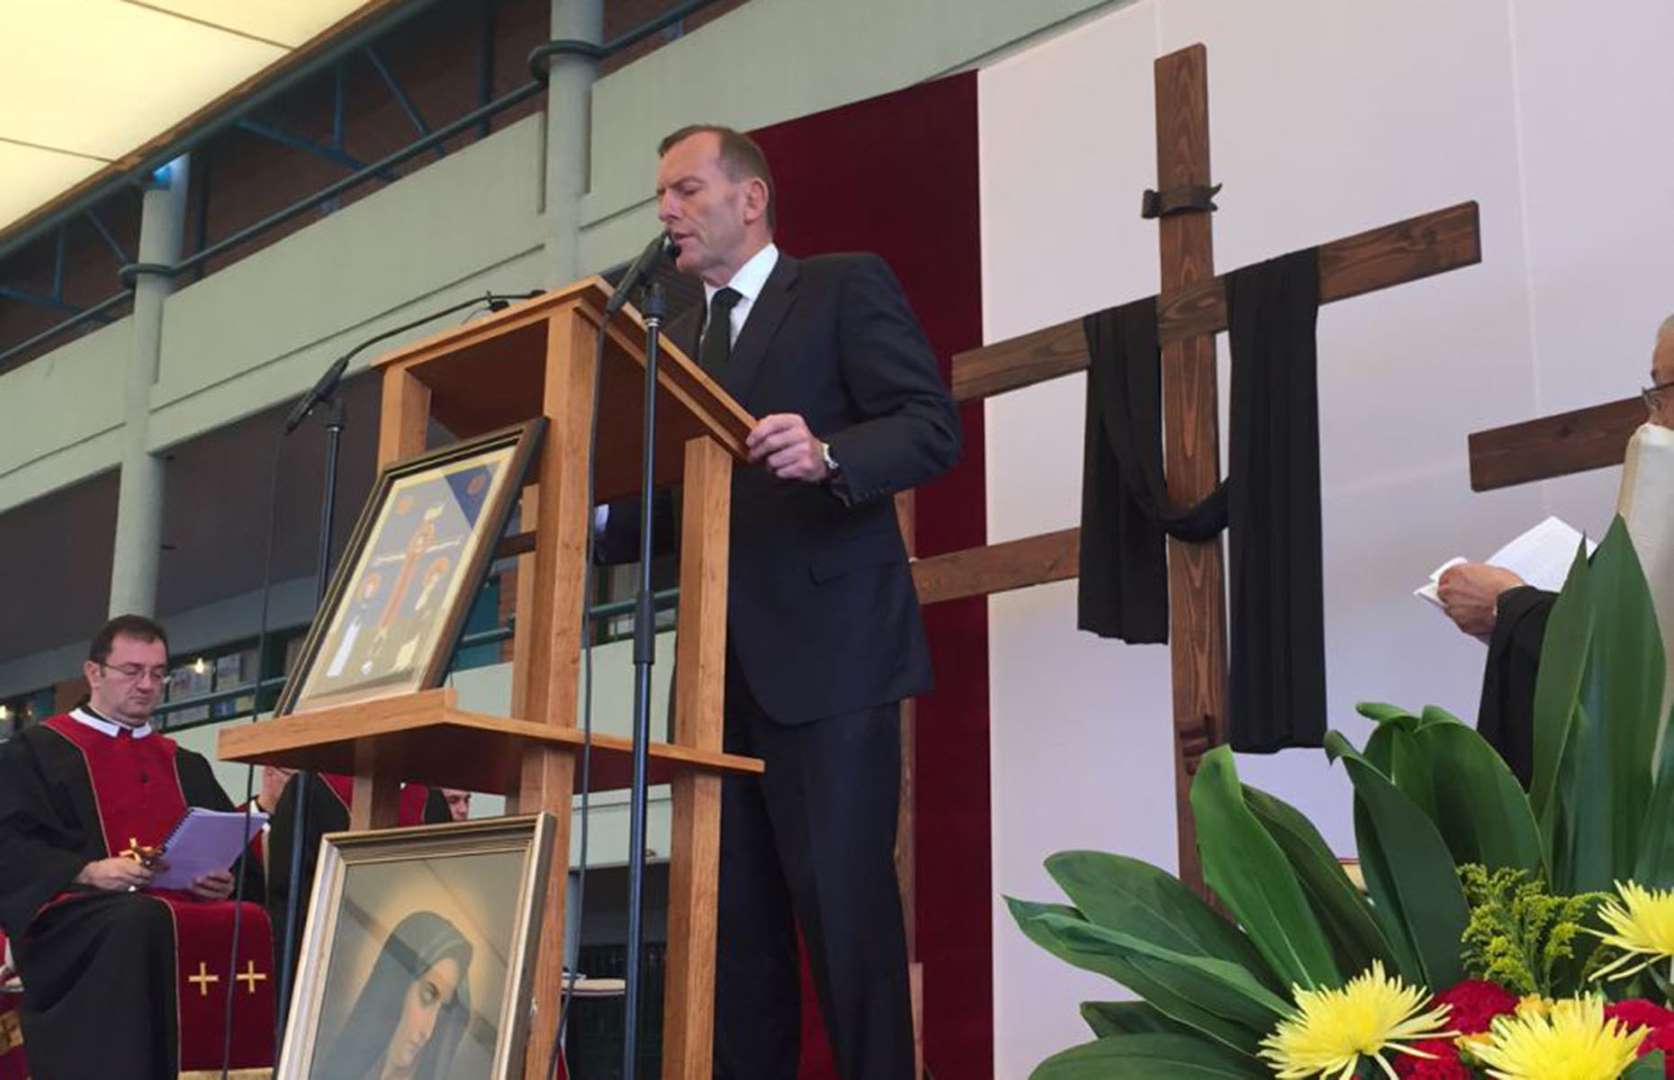 Australian PM attends Good Friday mass at Lebanese church